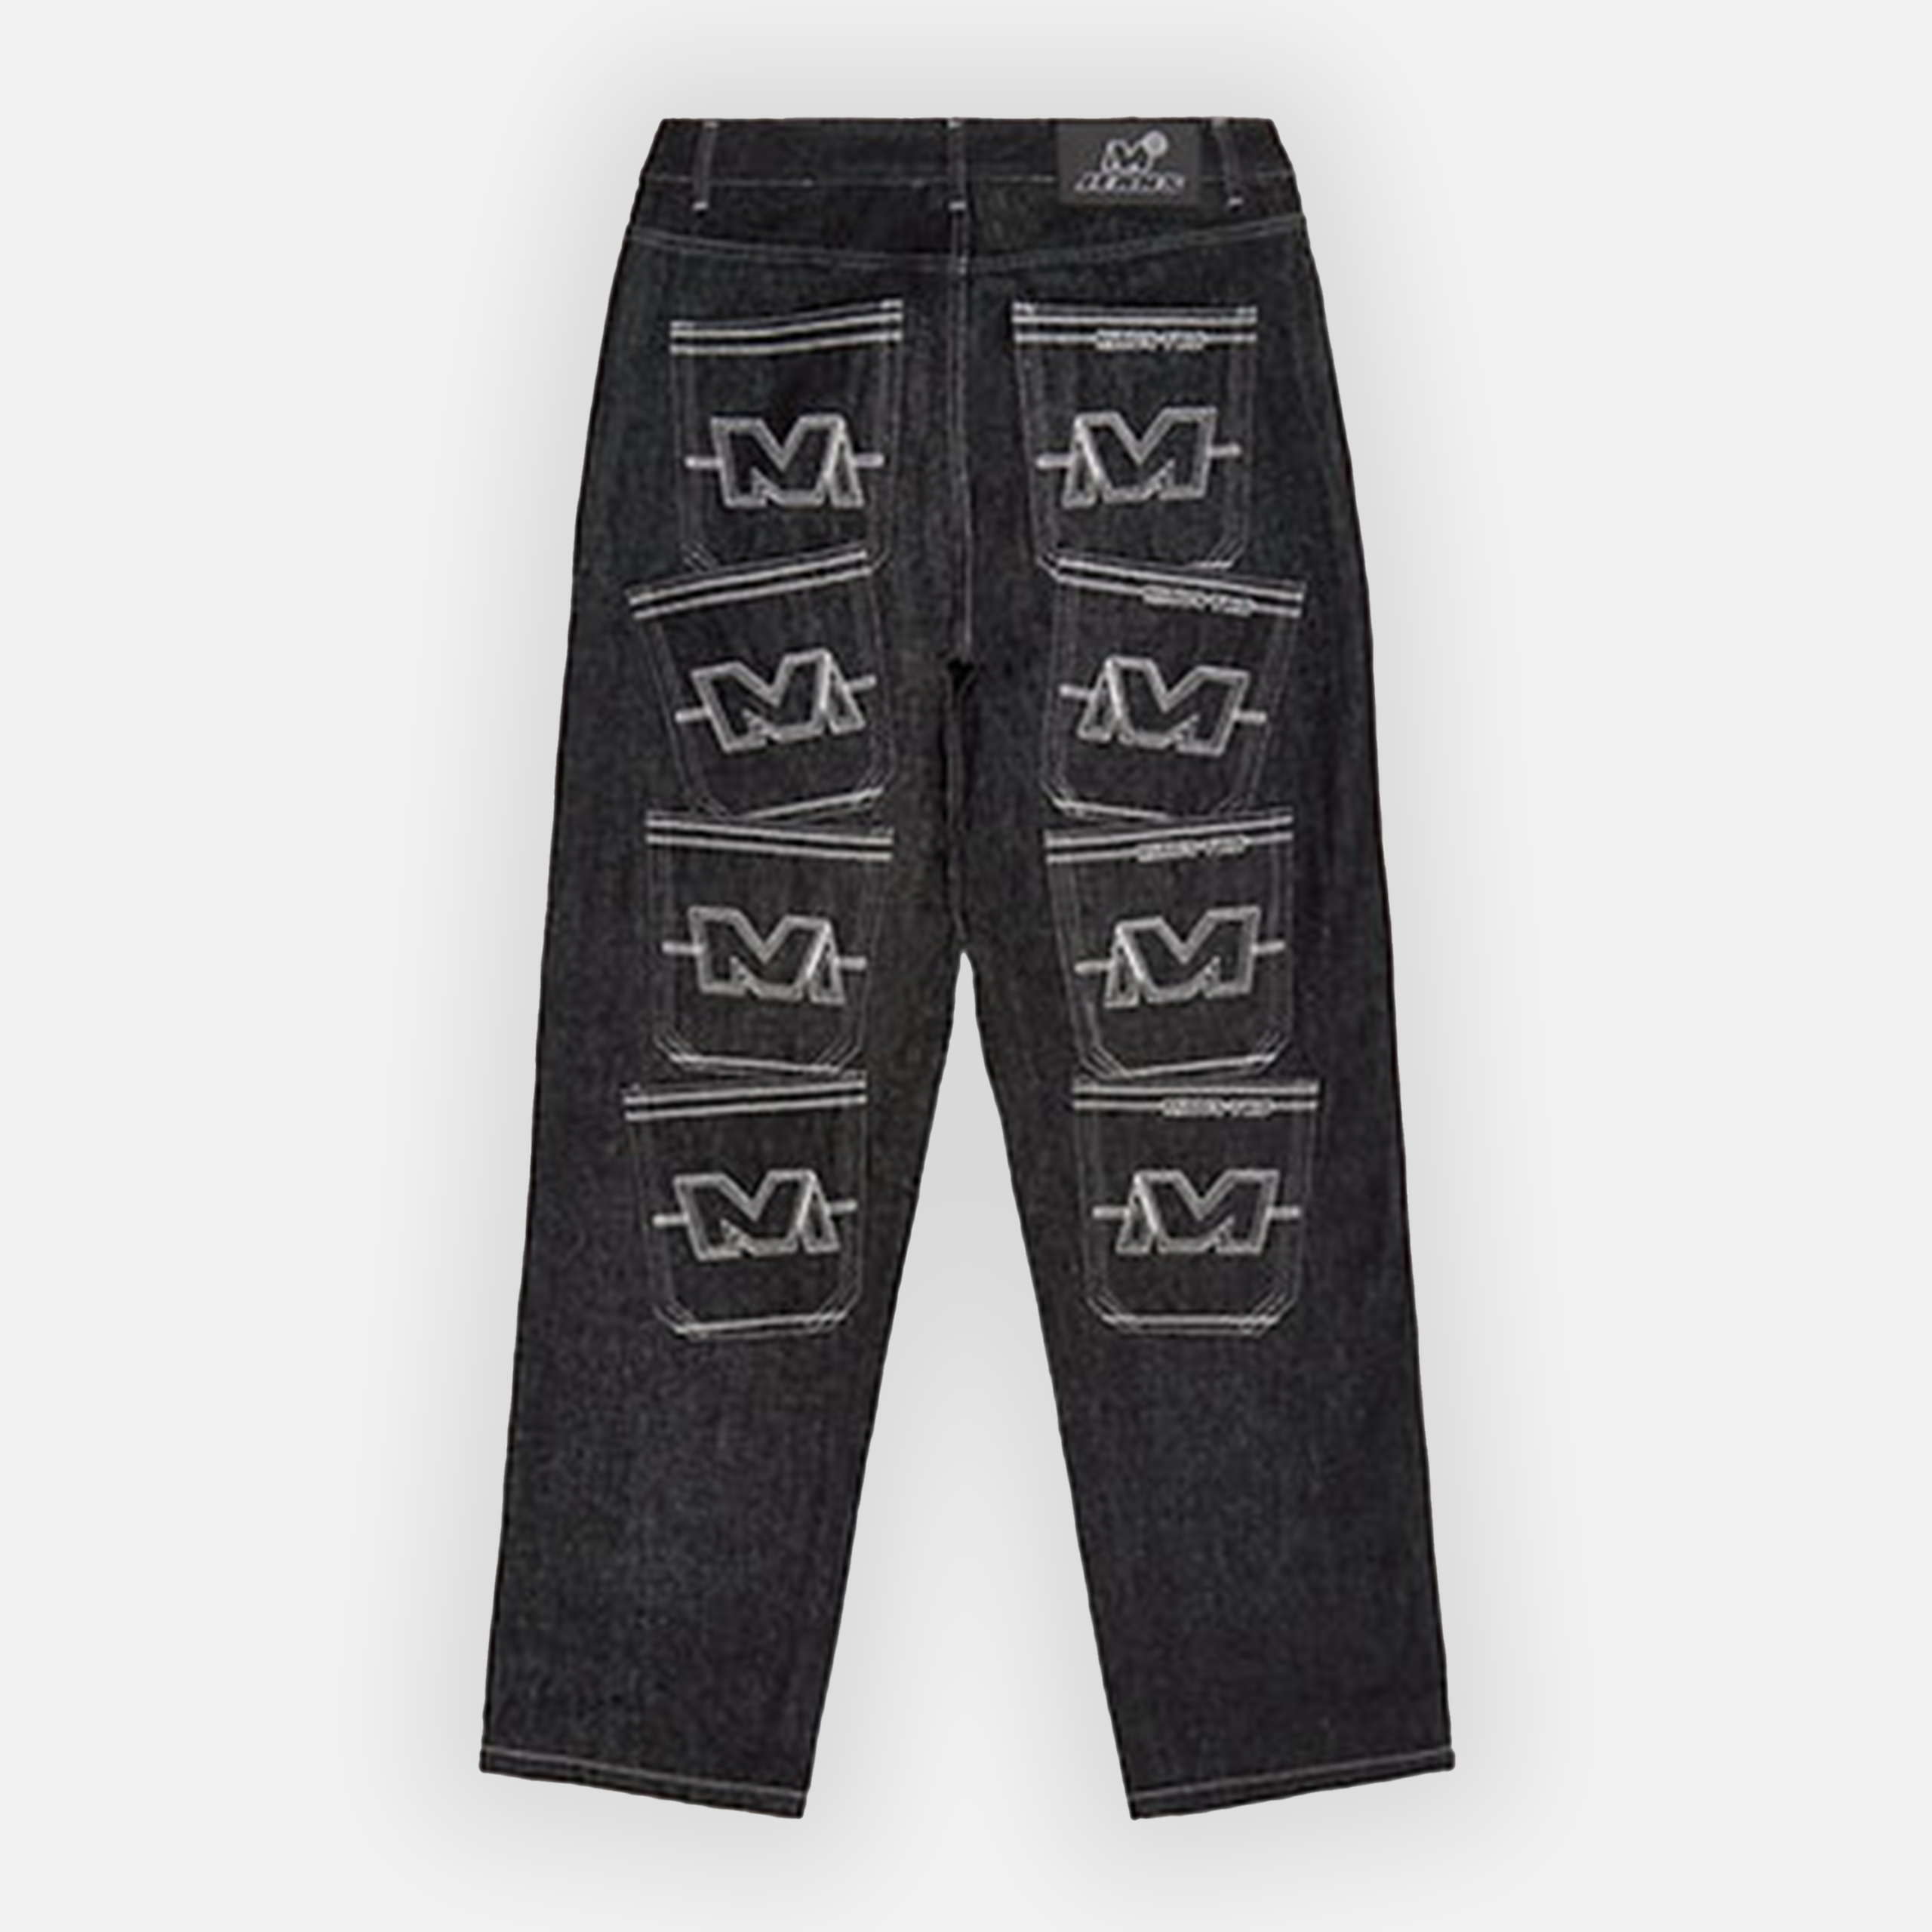 Minus-Two Multi Pocket Jeans (Grey Stitch)